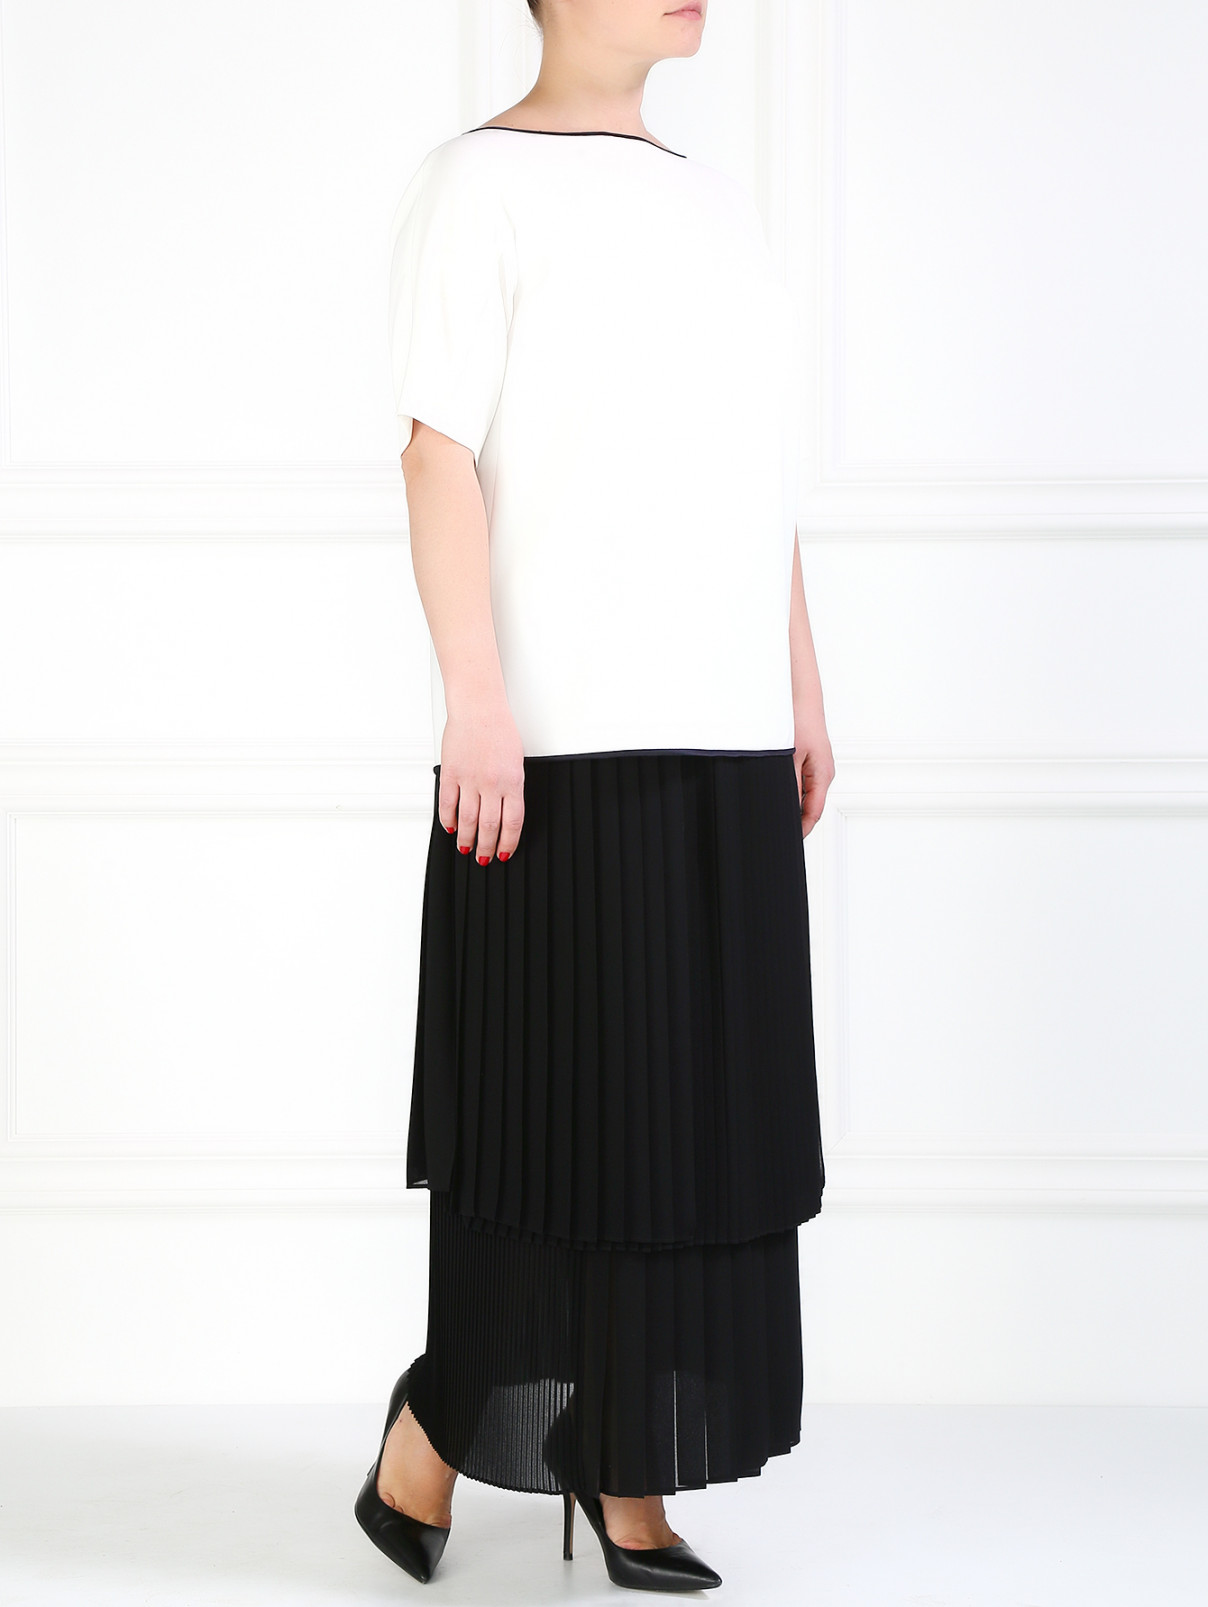 Плиссированная юбка-миди Marina Rinaldi  –  Модель Общий вид  – Цвет:  Черный